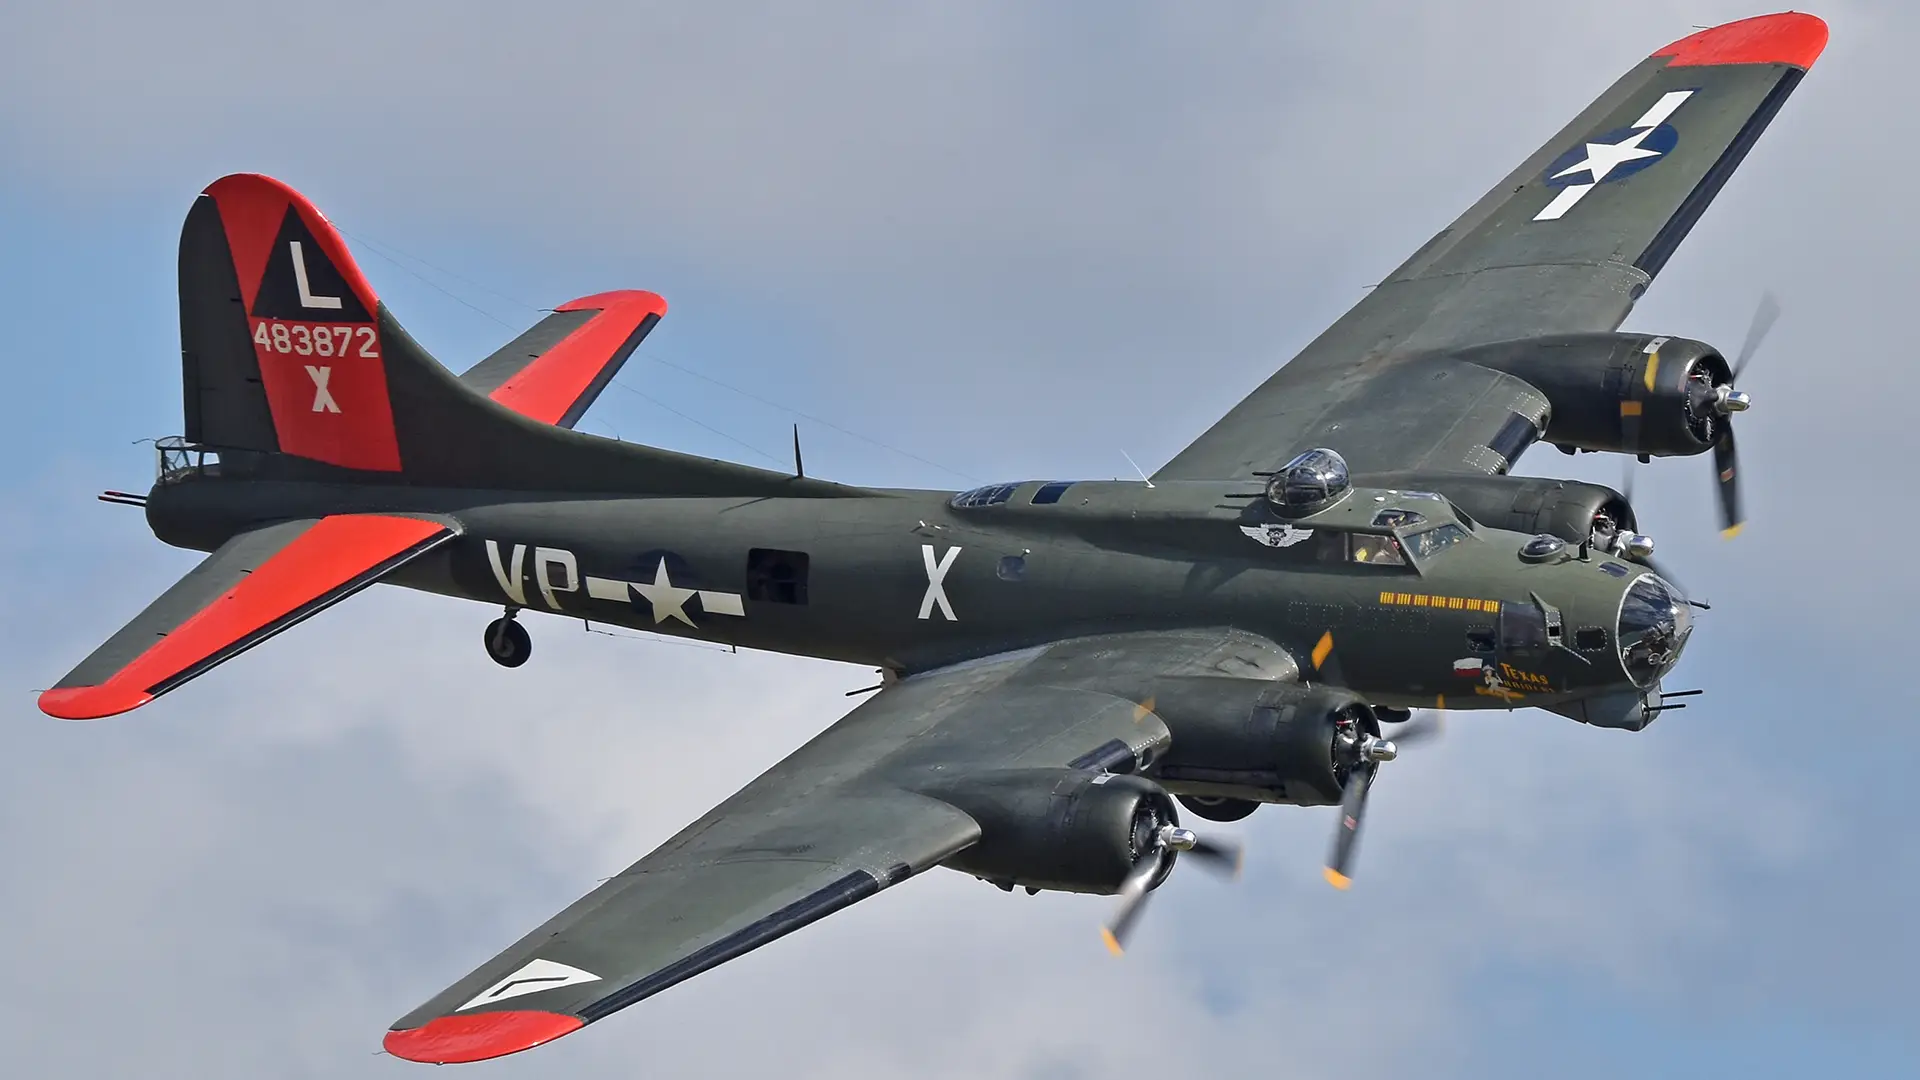 Ciężki bombowiec B-17 Flying Fortress zderzył się z samolotem P-63 Kingcobra podczas pokazu lotniczego Wings Over Dallas z okresu II wojny światowej